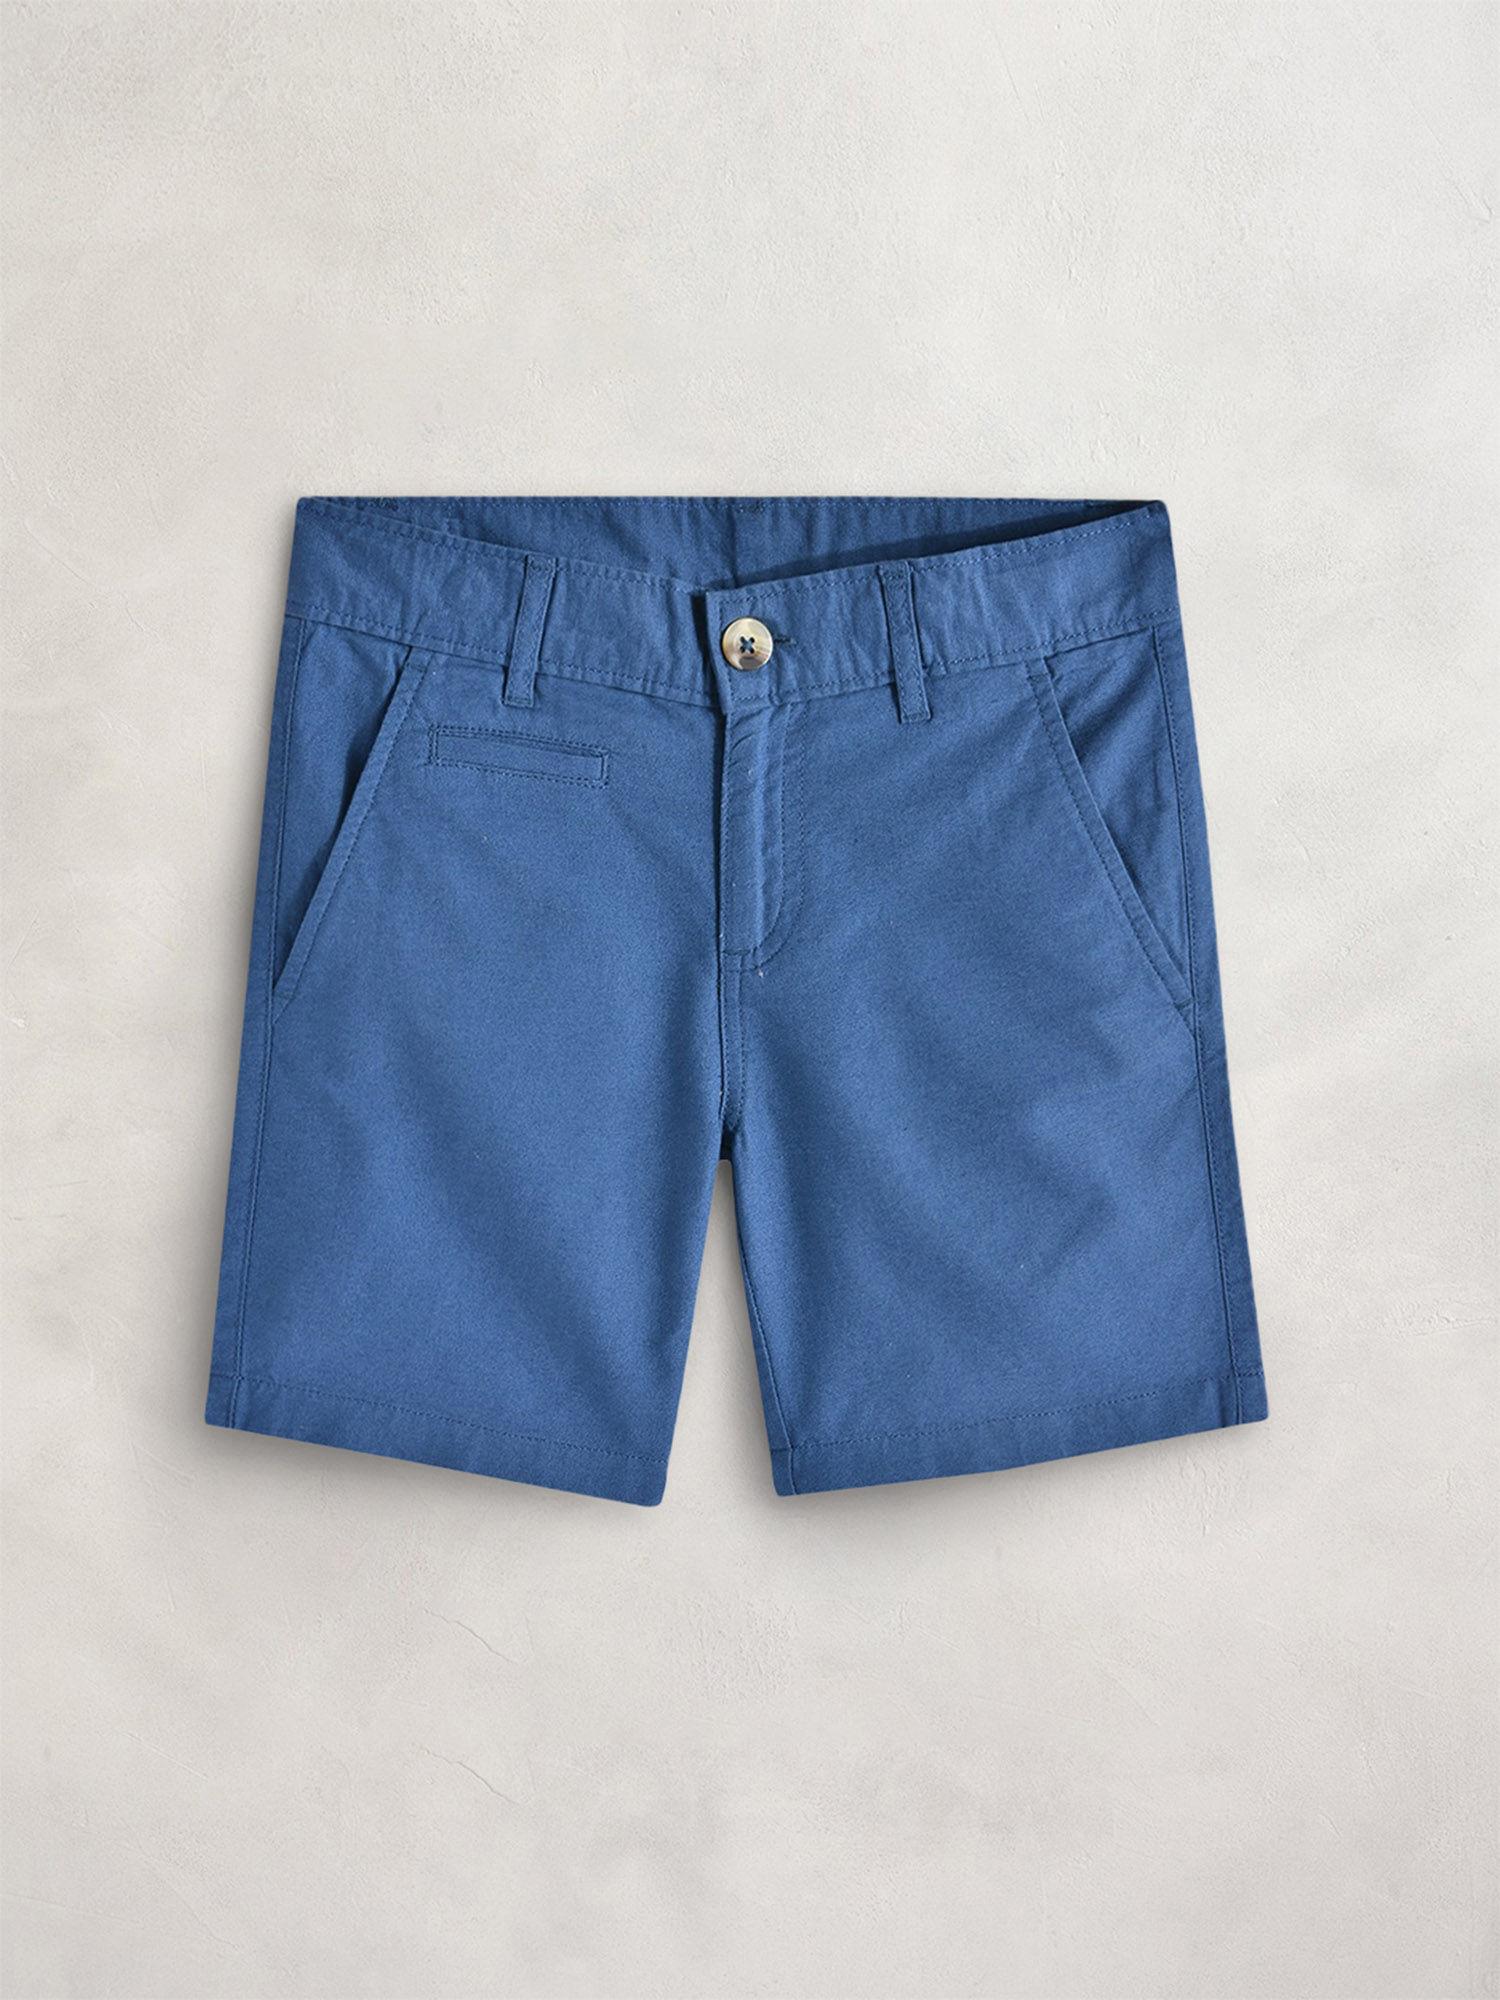 blue-washing-effect-wild-shorts